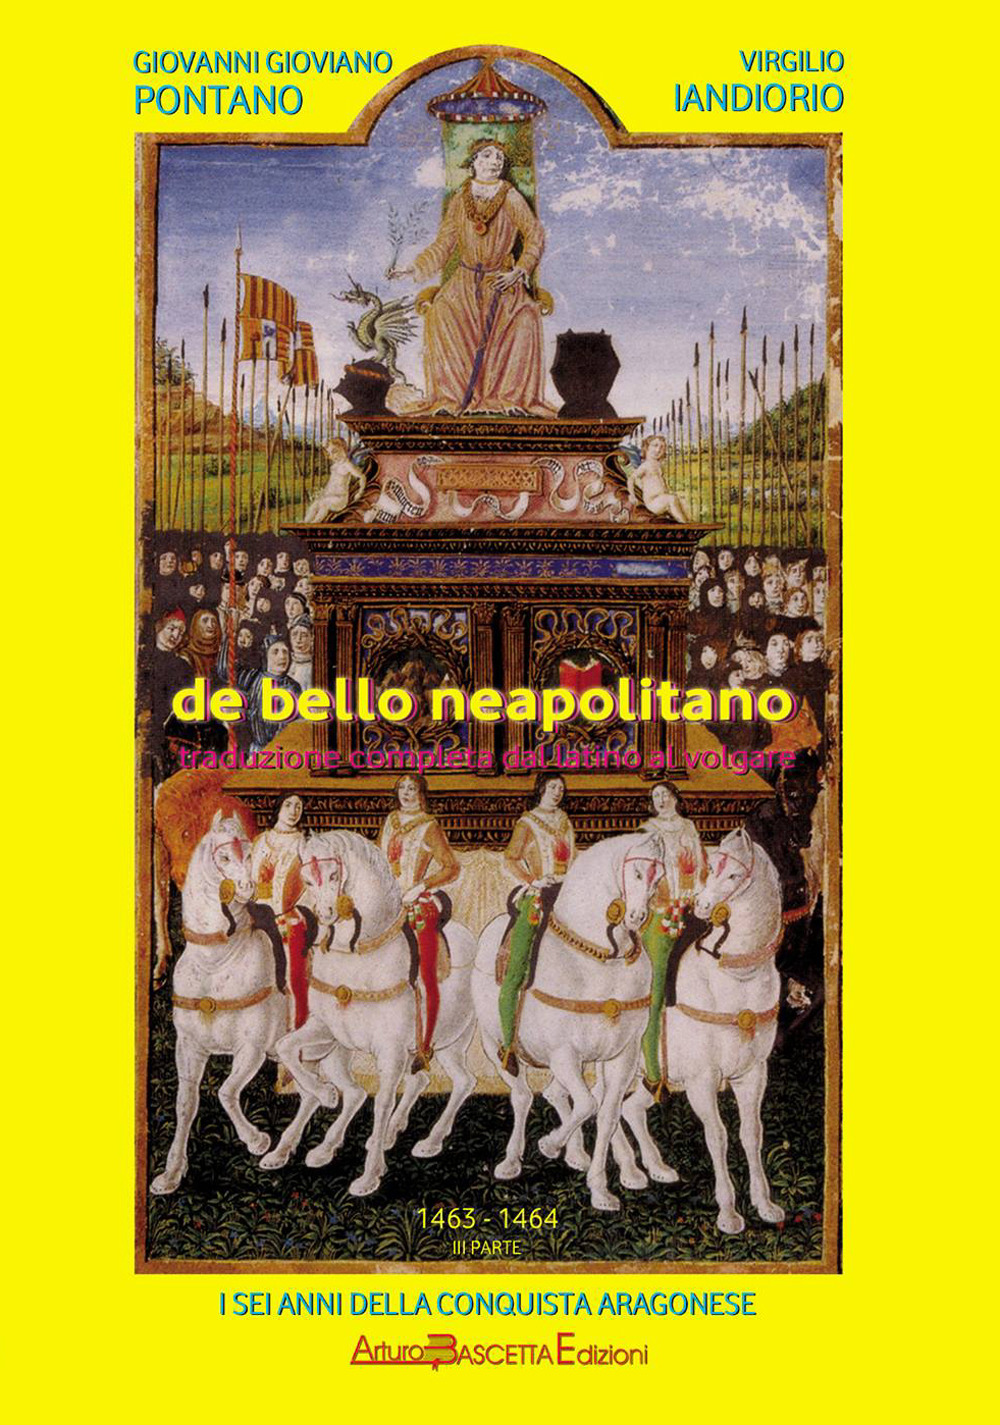 De bello neapolitano. Traduzione completa dal latino al volgare. Vol. 3: 1463-1464. I sei anni della conquista aragonese